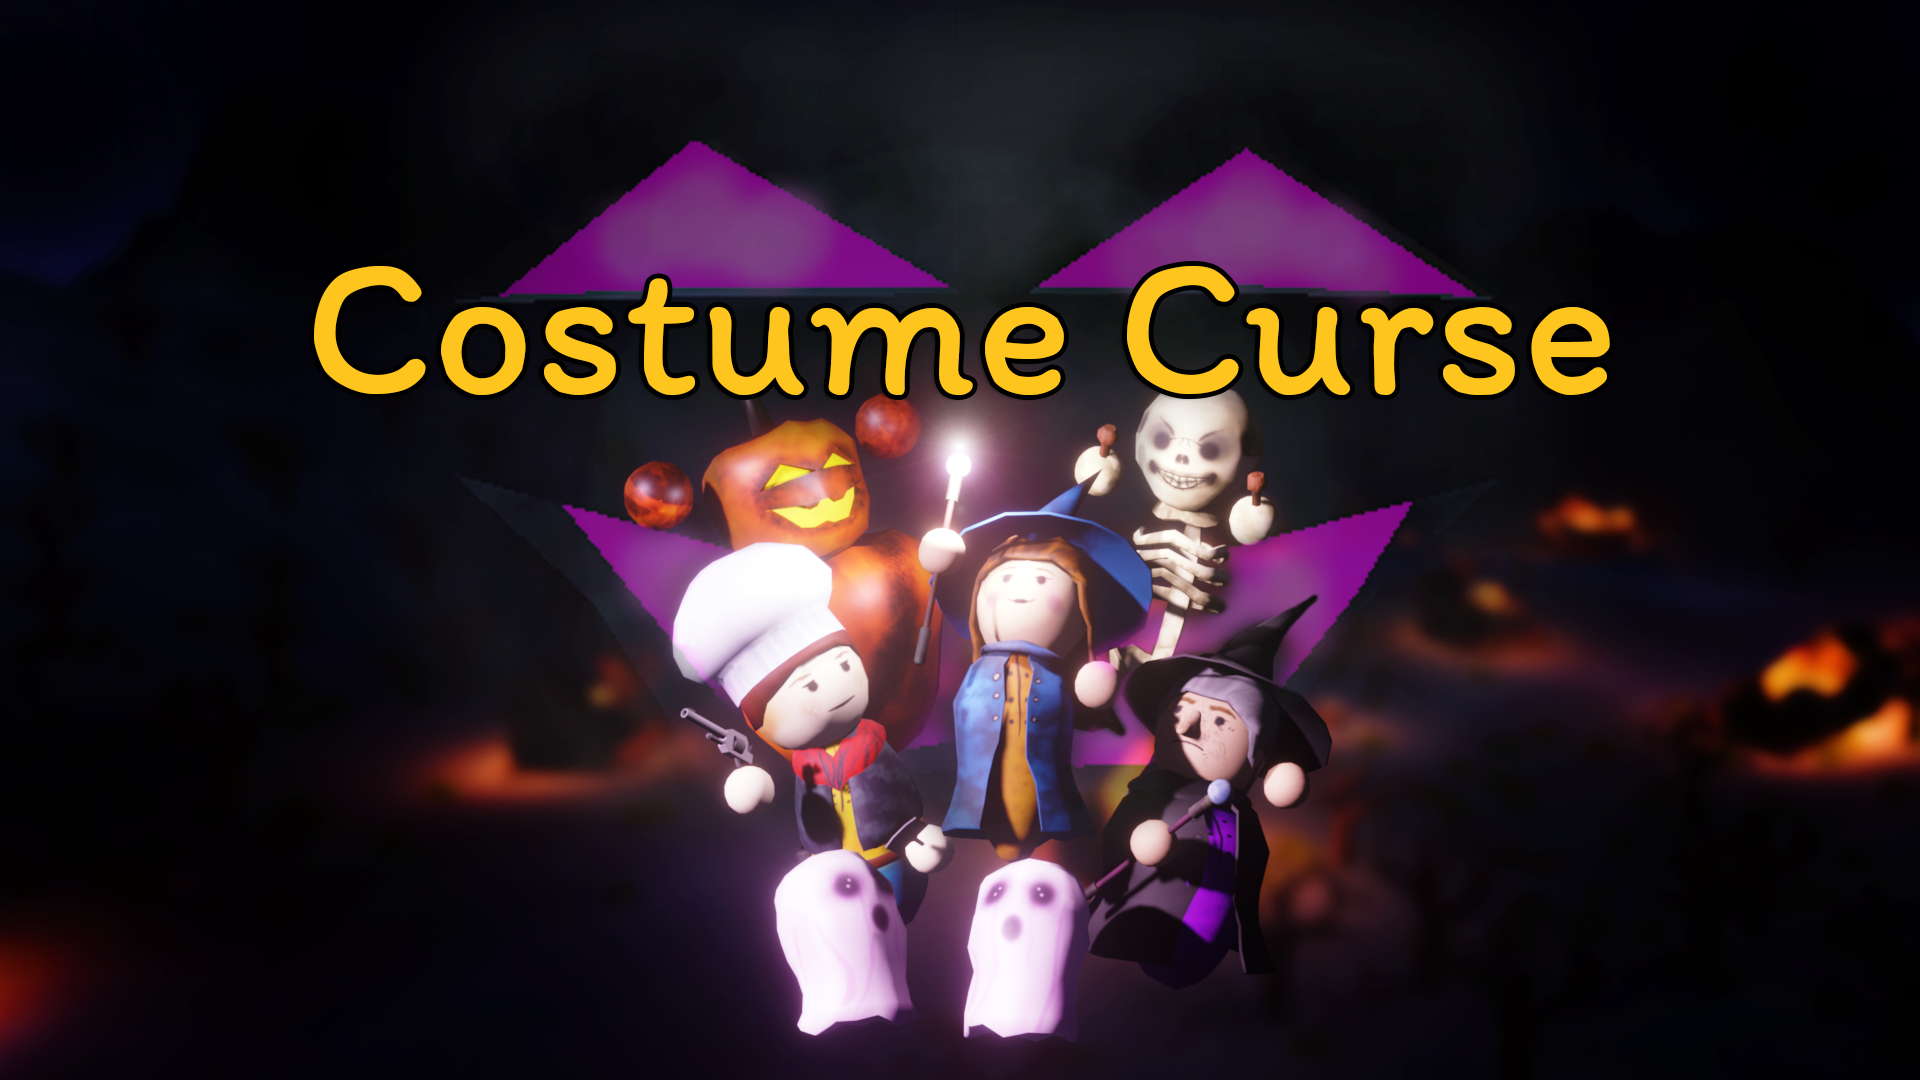 Costume Curse